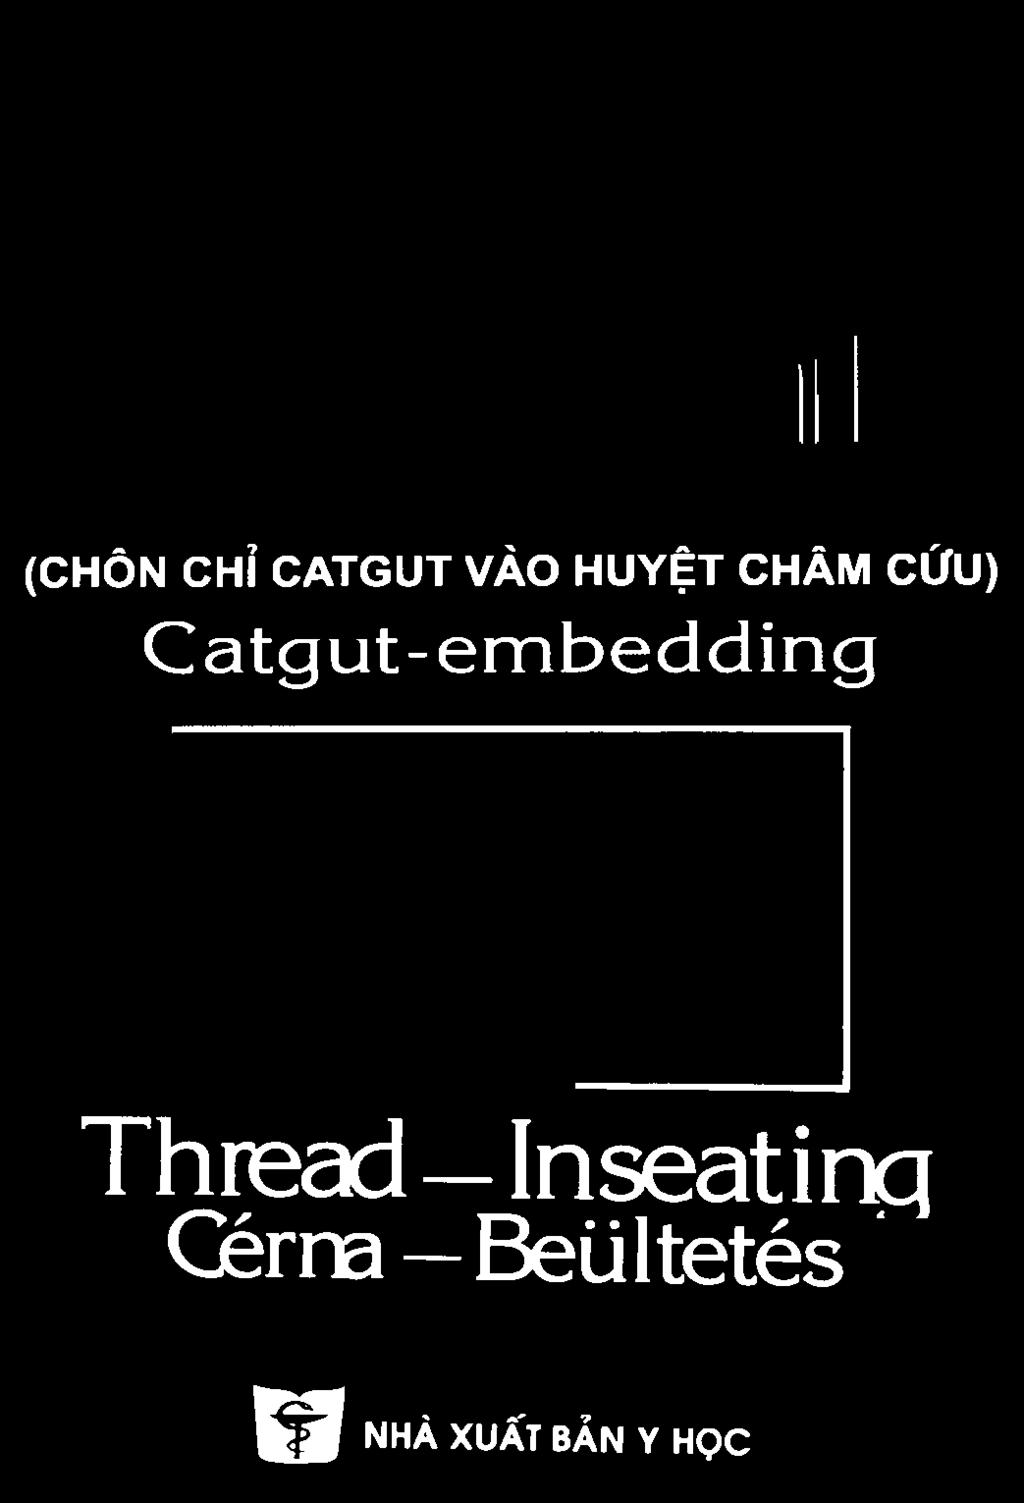 Thread Inseatinq